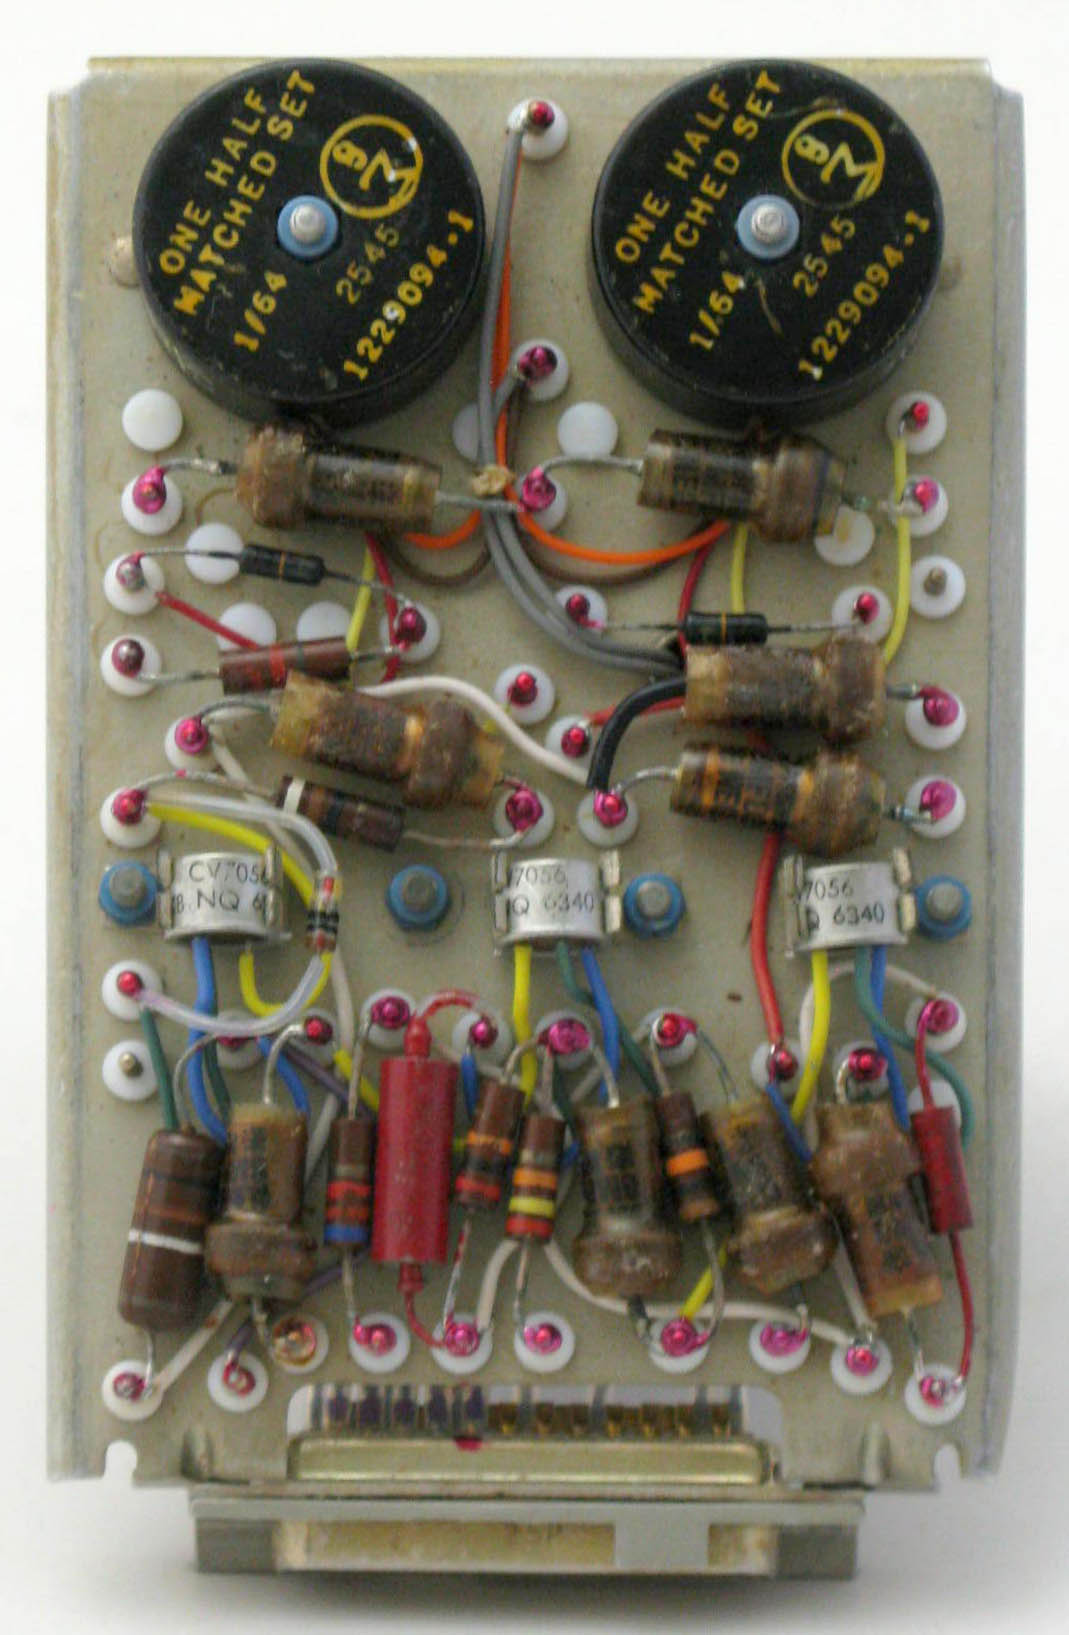 Control Amplifier Circuit Module